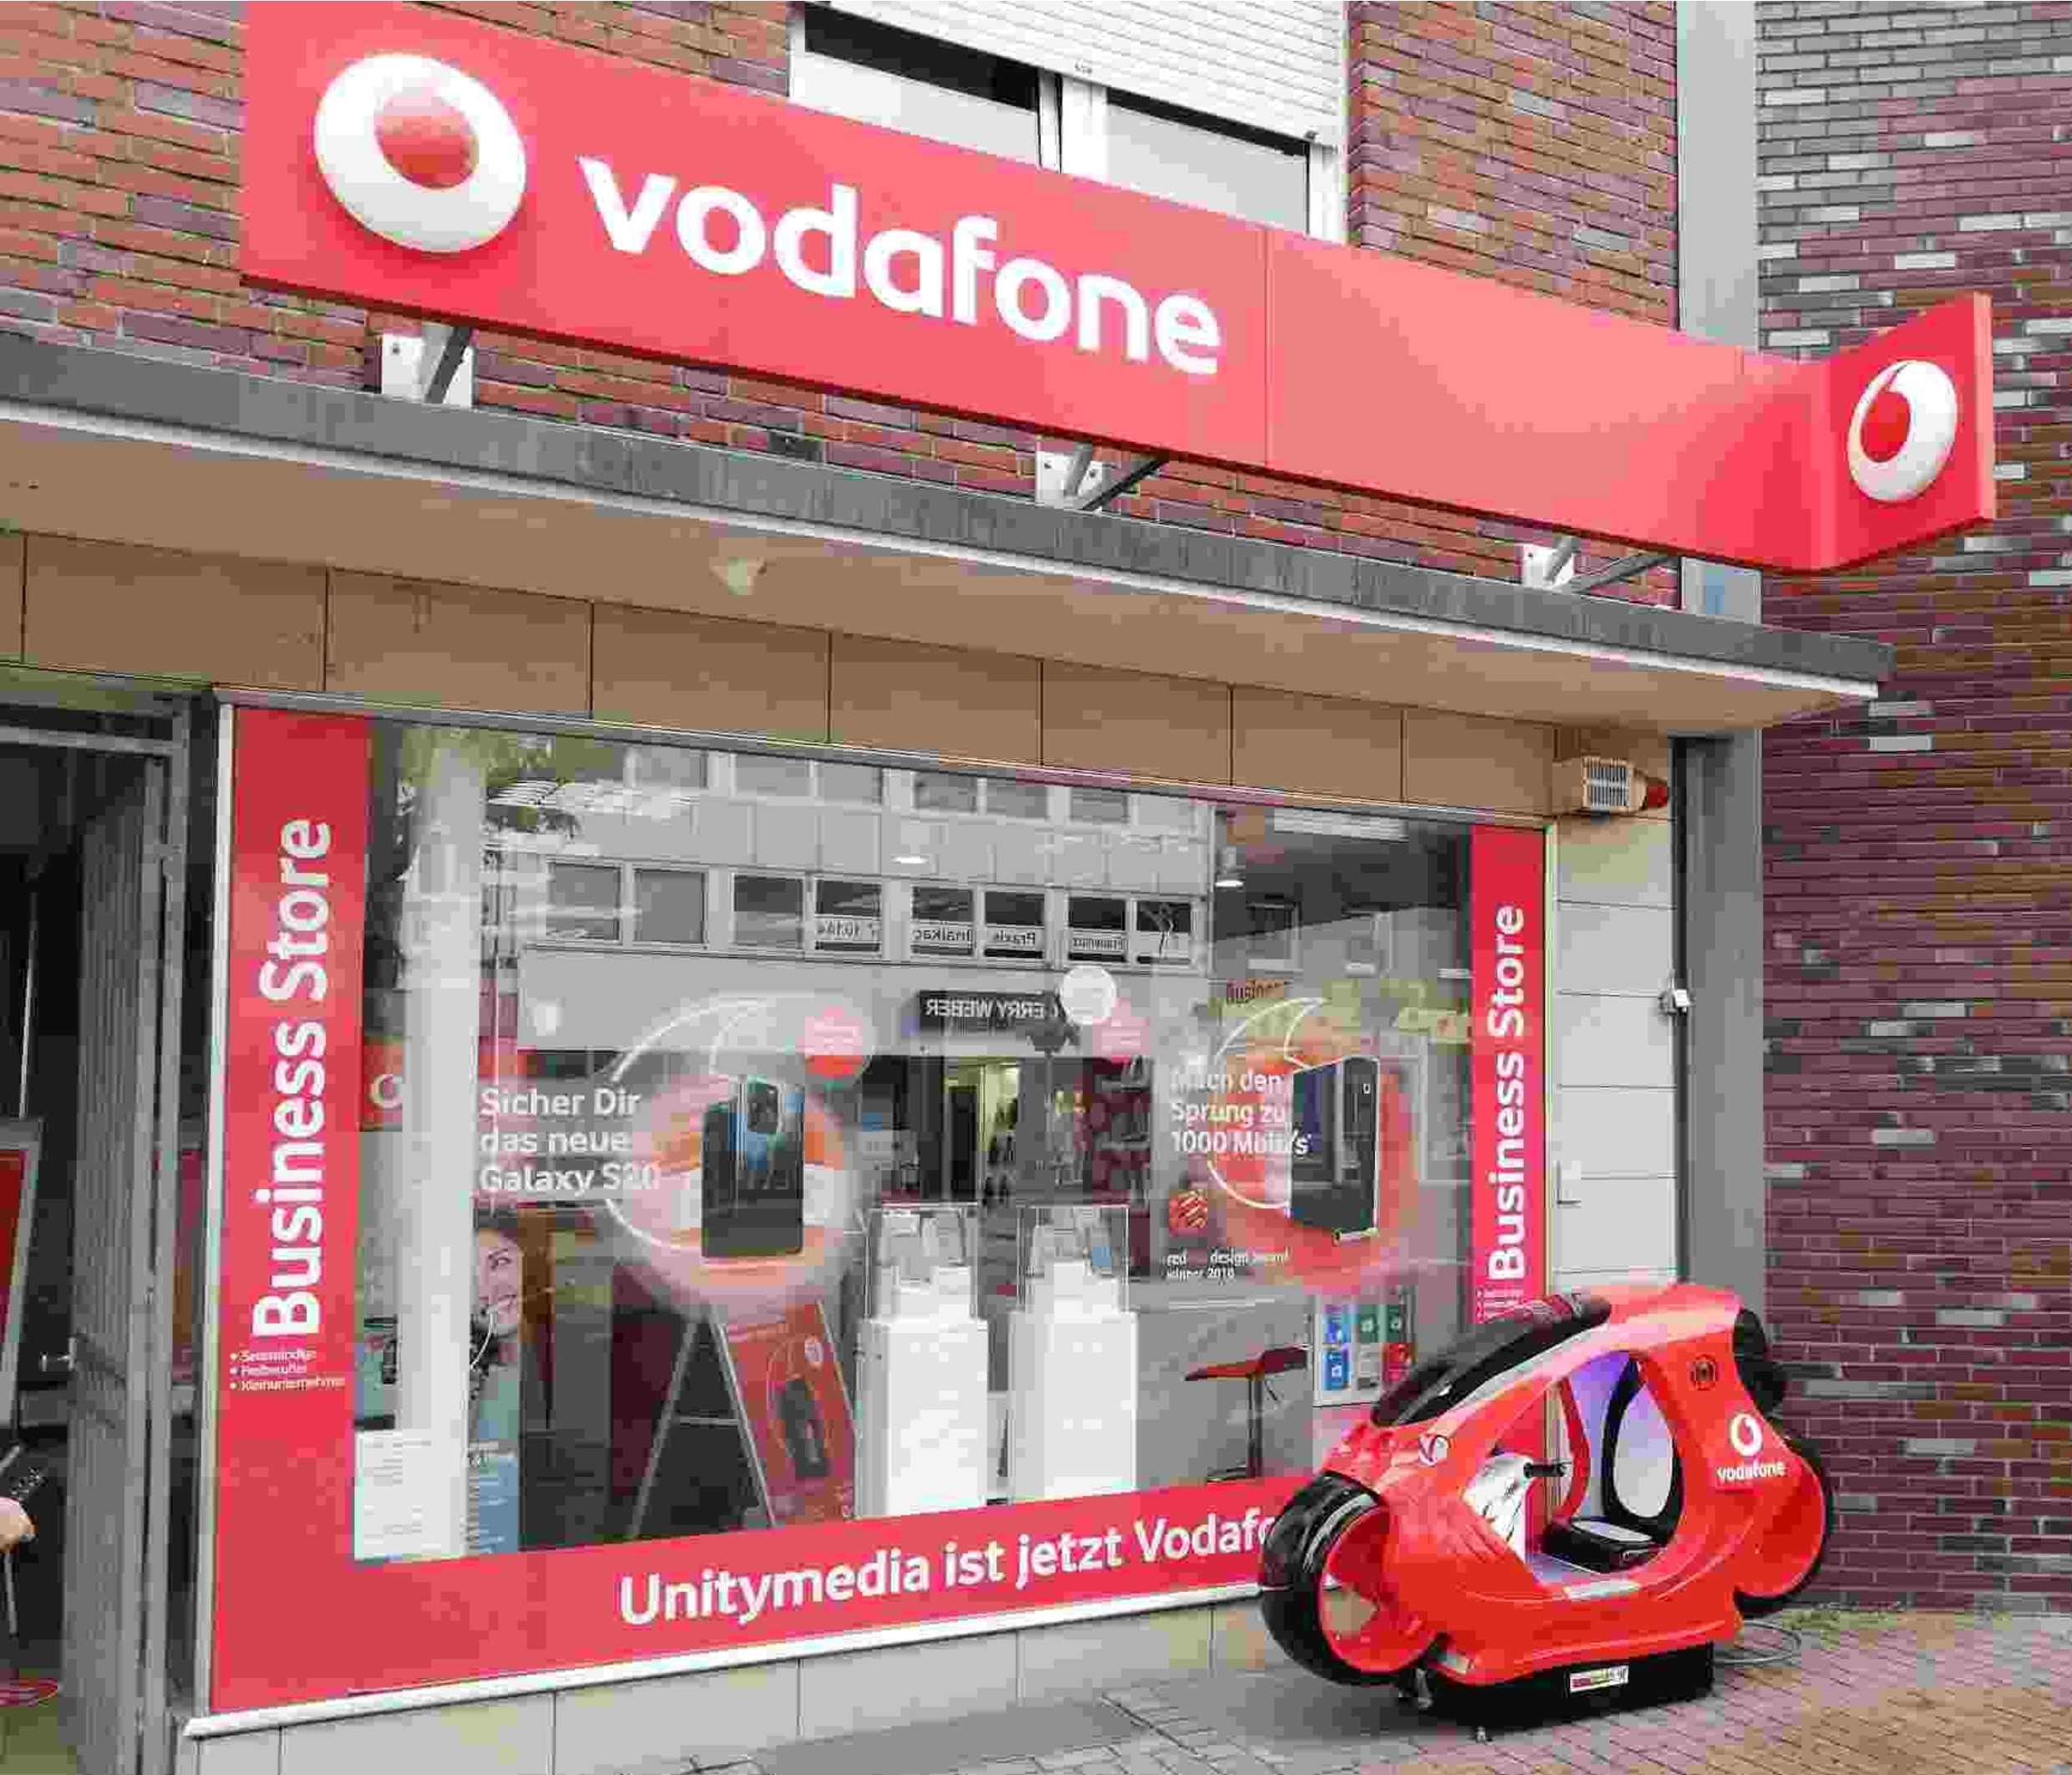 Exclusiv für Vodafone: Futuristisches Super-Rennbike mit LED